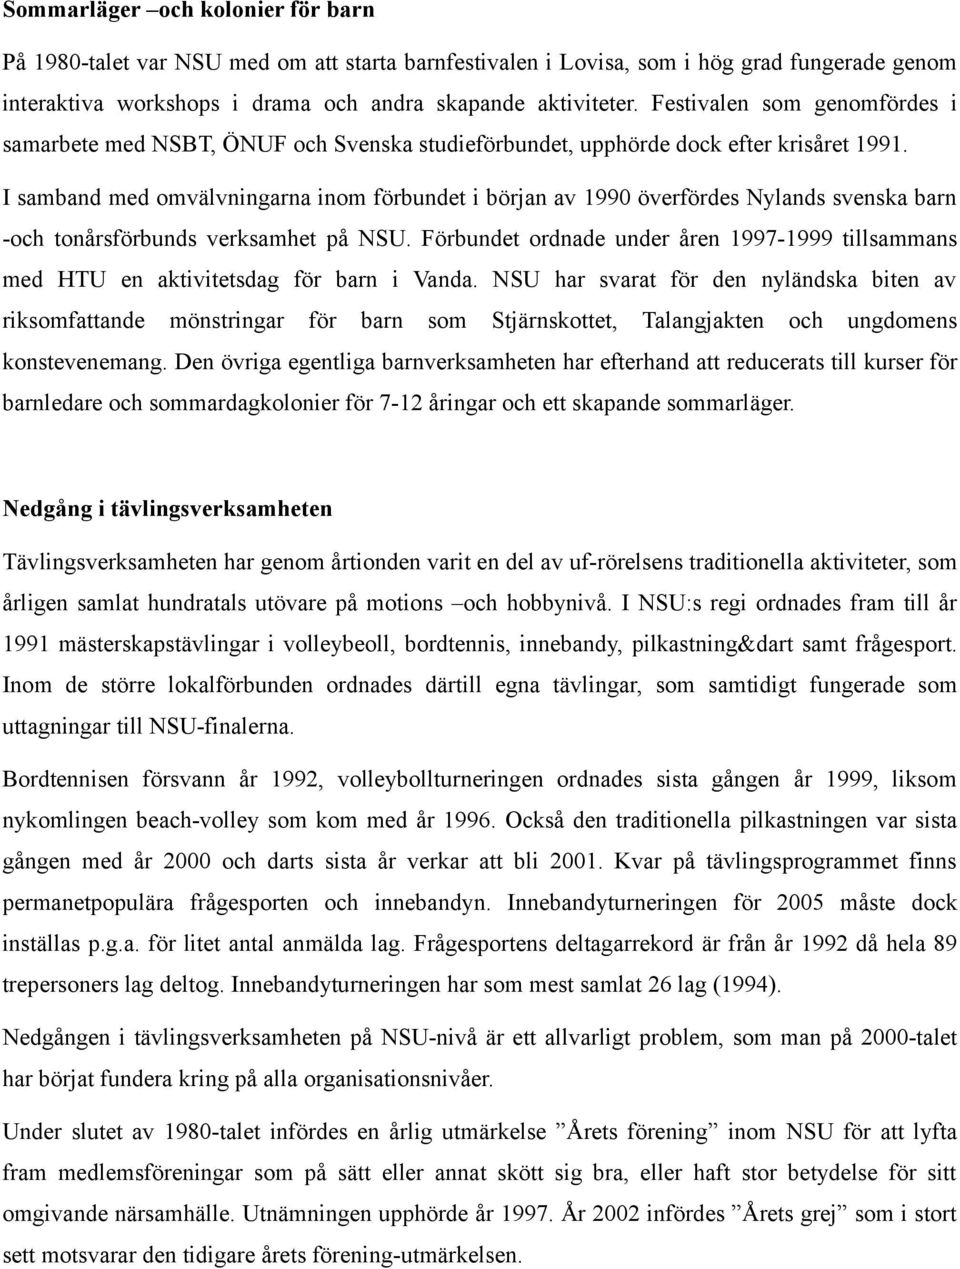 I samband med omvälvningarna inom förbundet i början av 1990 överfördes Nylands svenska barn -och tonårsförbunds verksamhet på NSU.